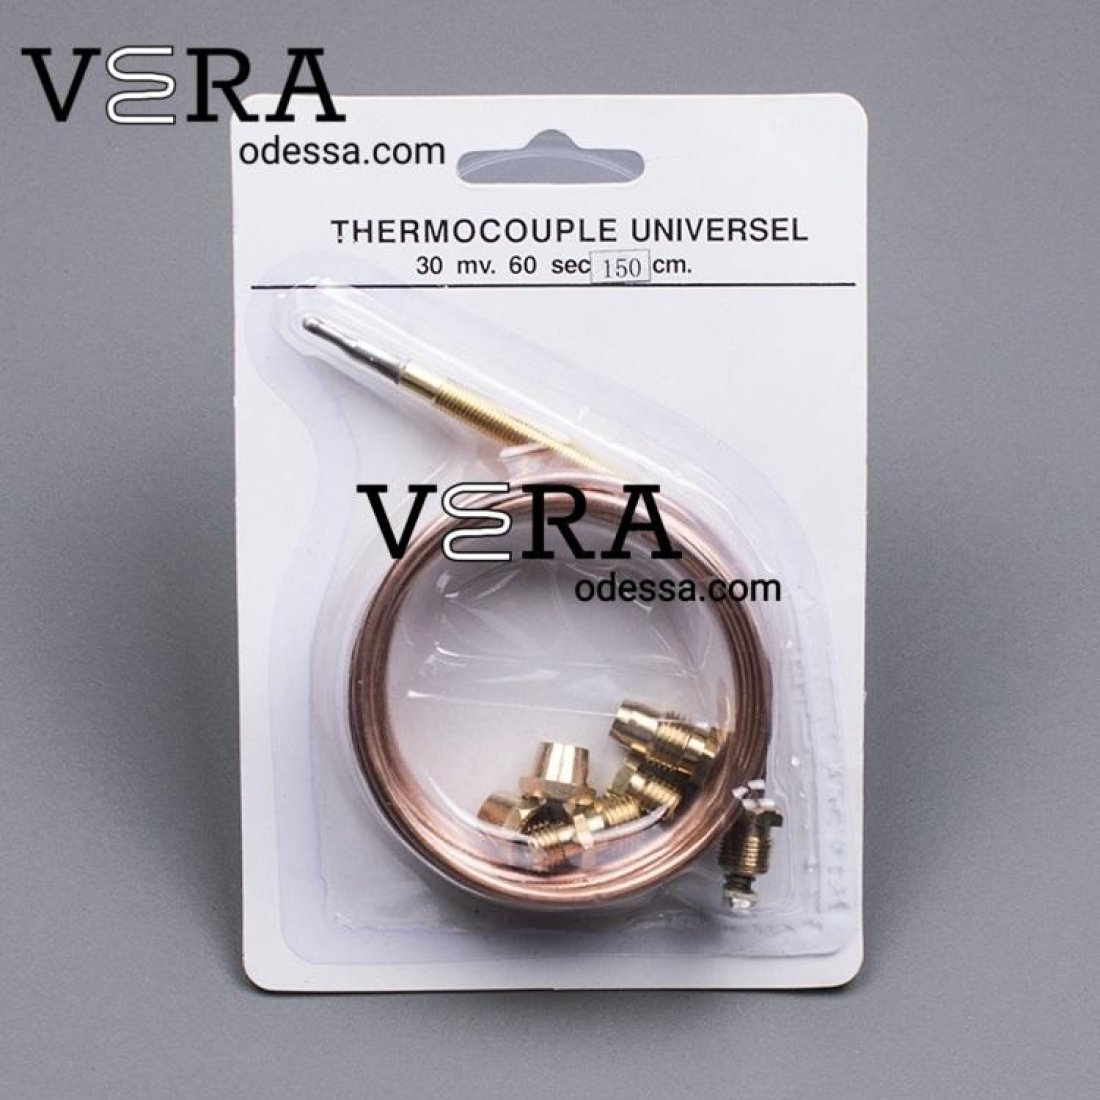 Купить термопару универсальную 1500 mm для газовой плиты оптом, фотография 1